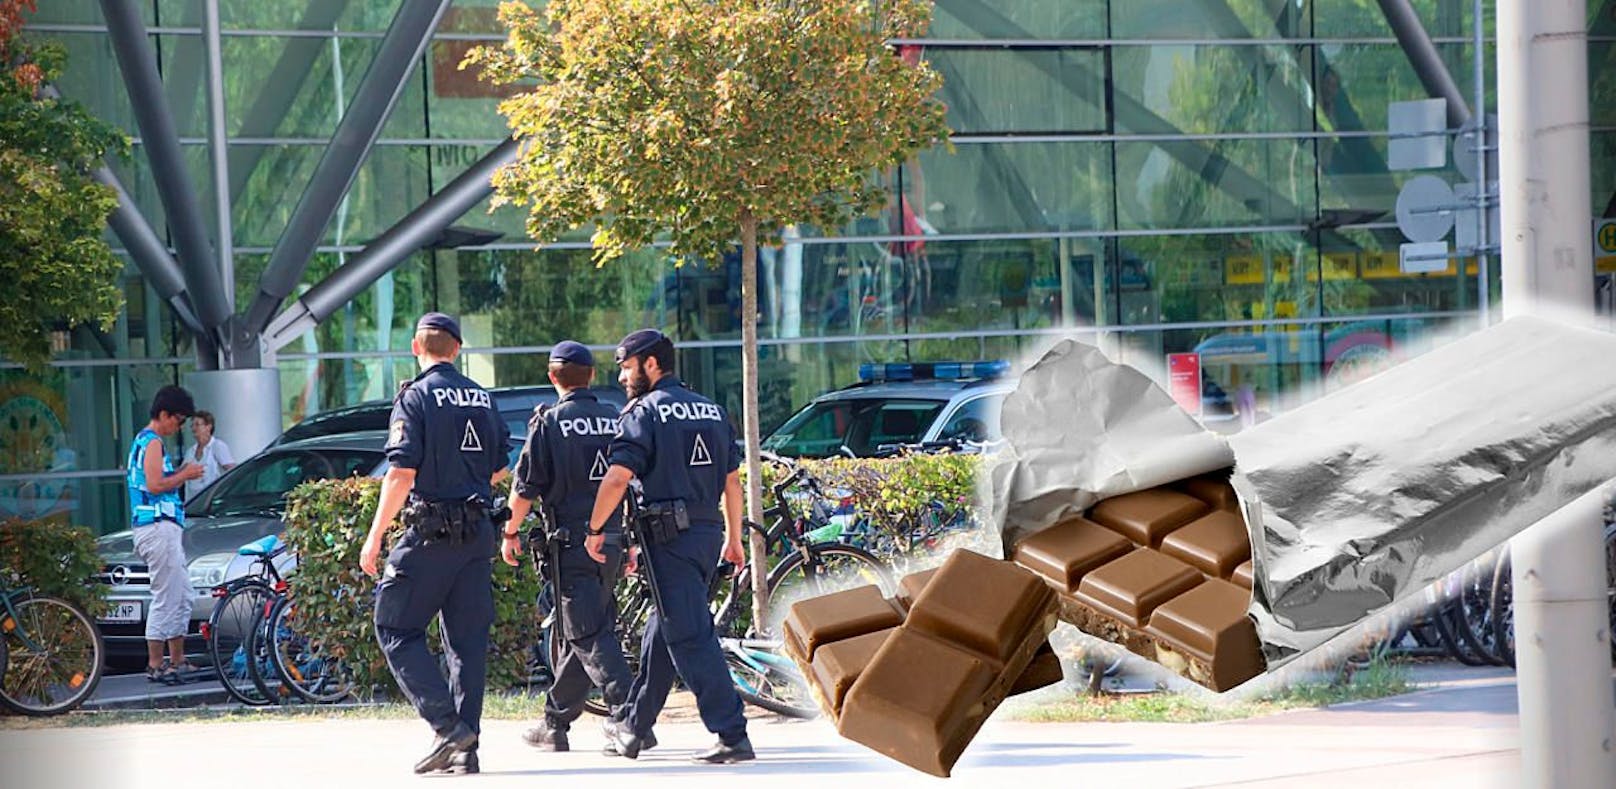 Wegen 4,37 Euro rückte die Polizei zum Hauptbahnhof an. Nahm einen 22-jährigen Linzer fest, der Süßes aus einem Supermarkt mitgehen lassen wollte.  